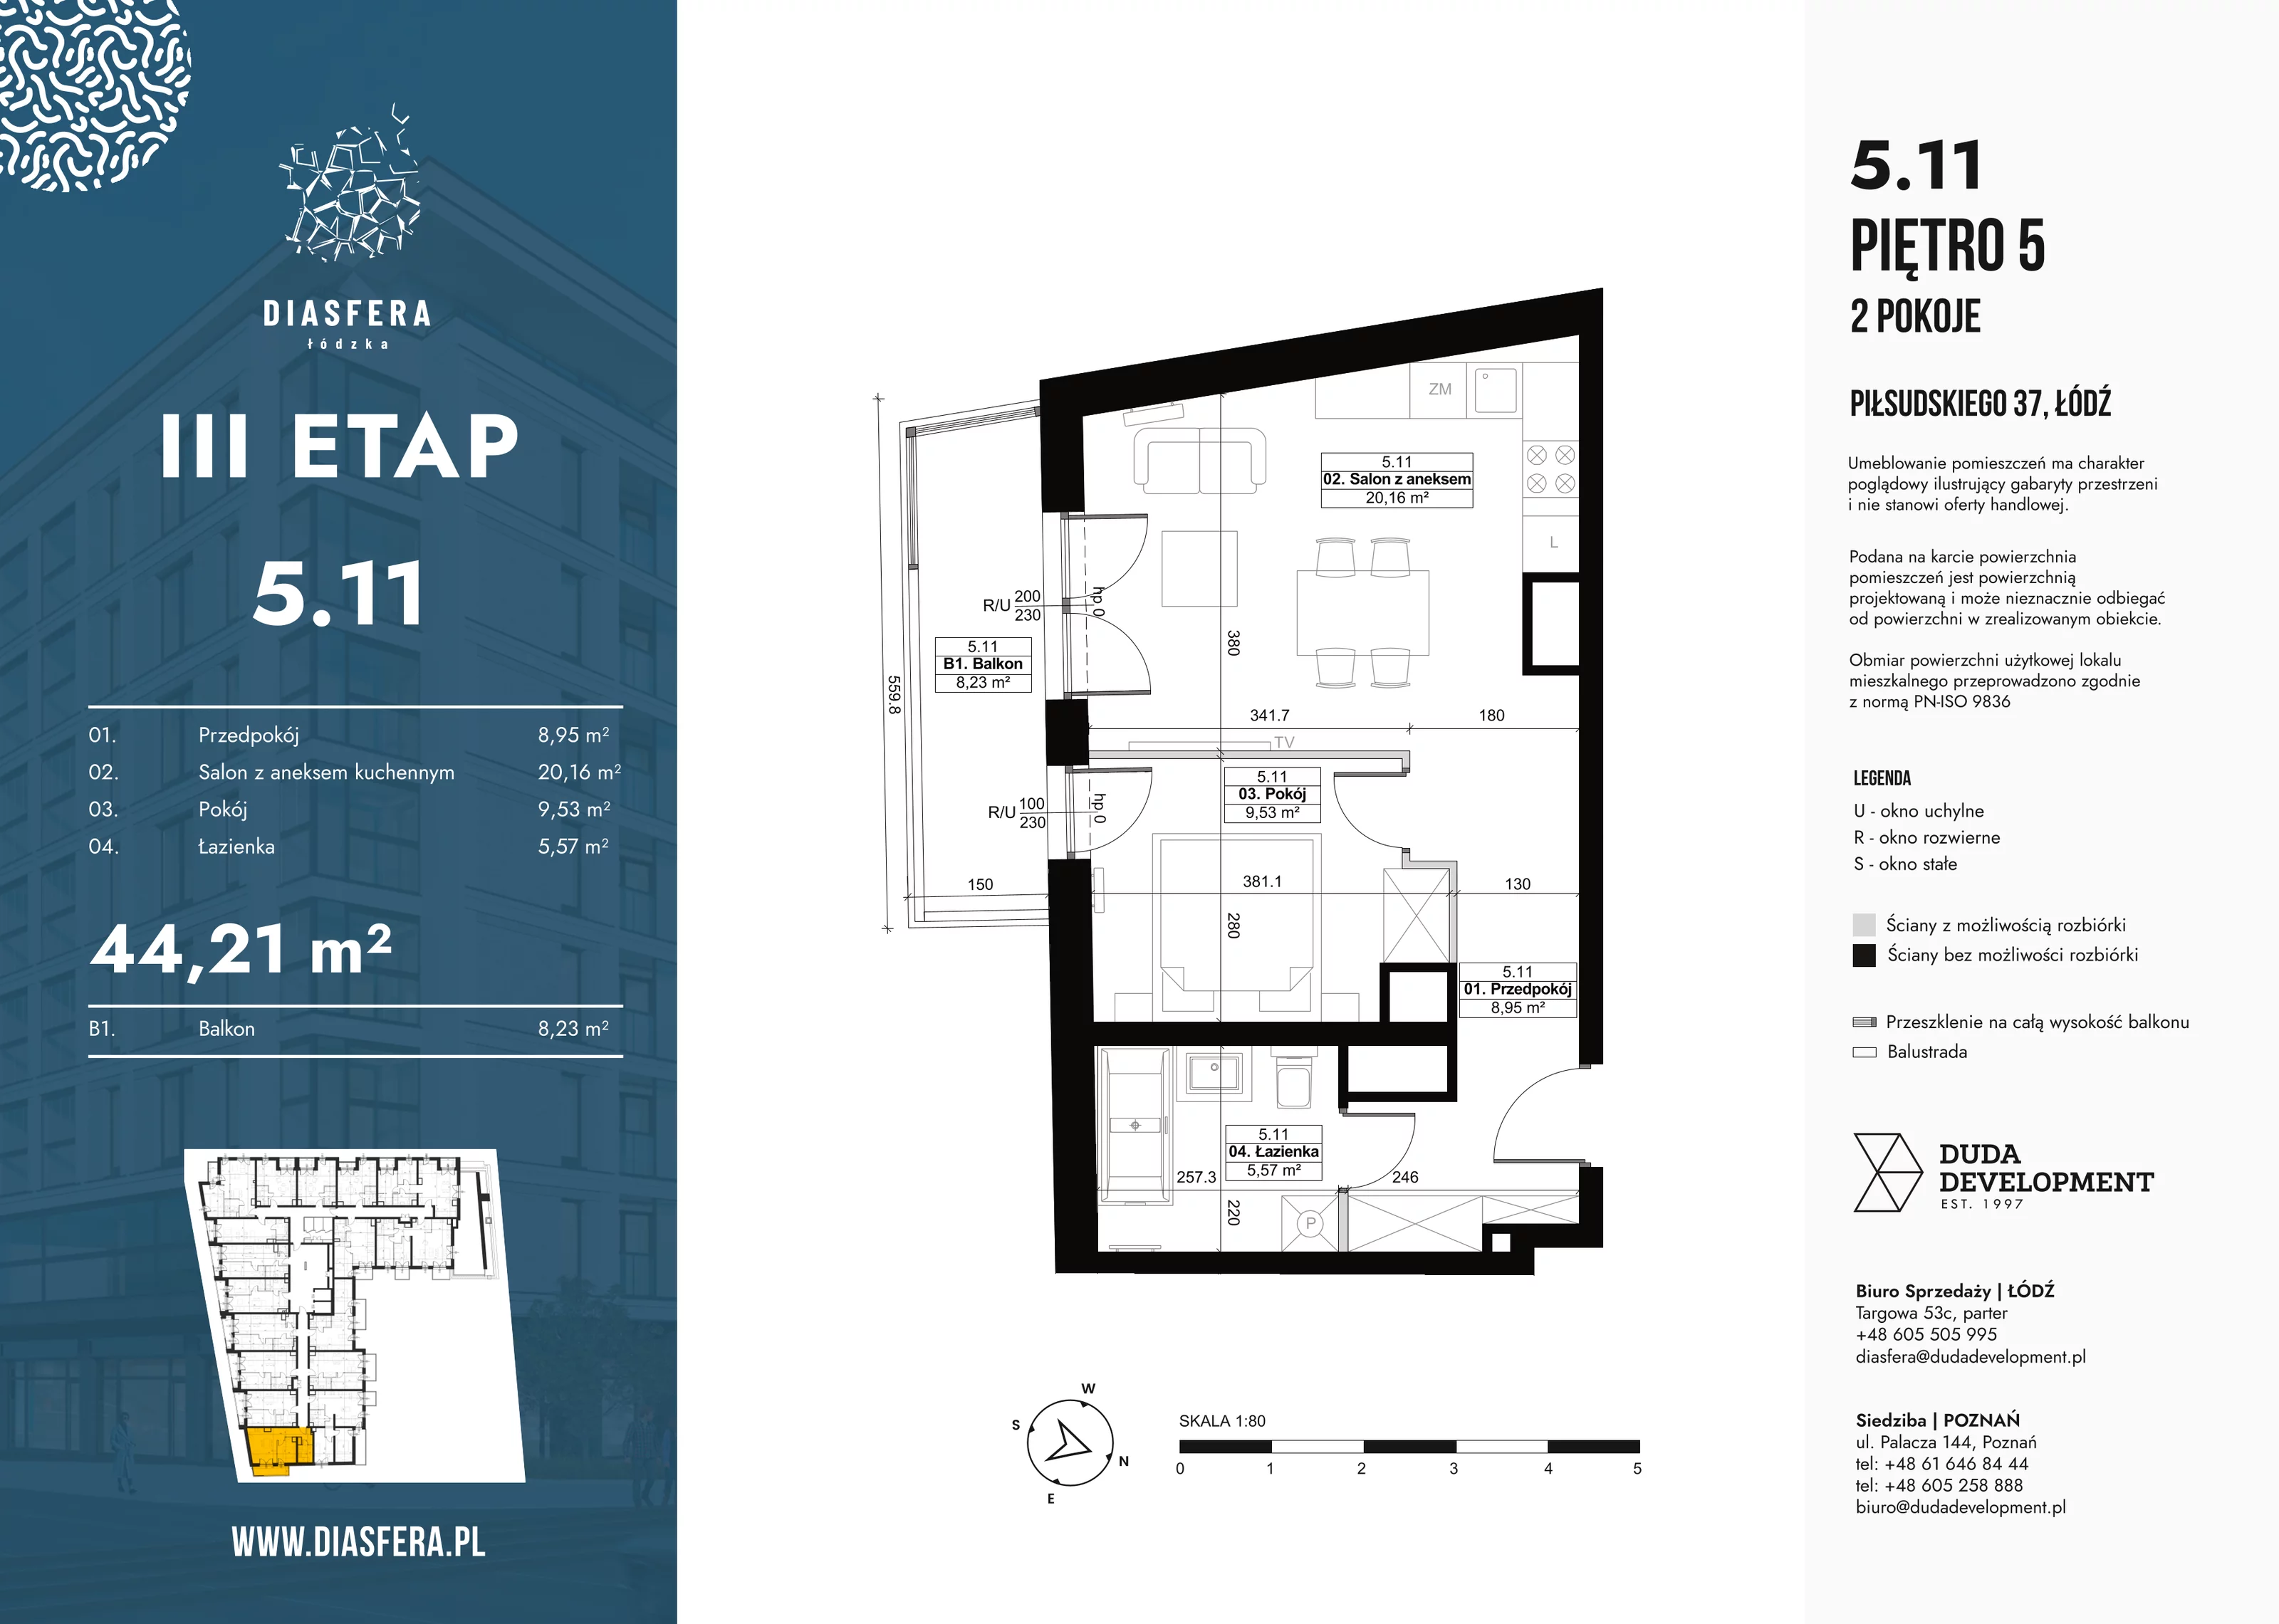 Mieszkanie 44,21 m², piętro 5, oferta nr 5_11, Diasfera III, Łódź, Śródmieście, al. Piłsudskiego 37